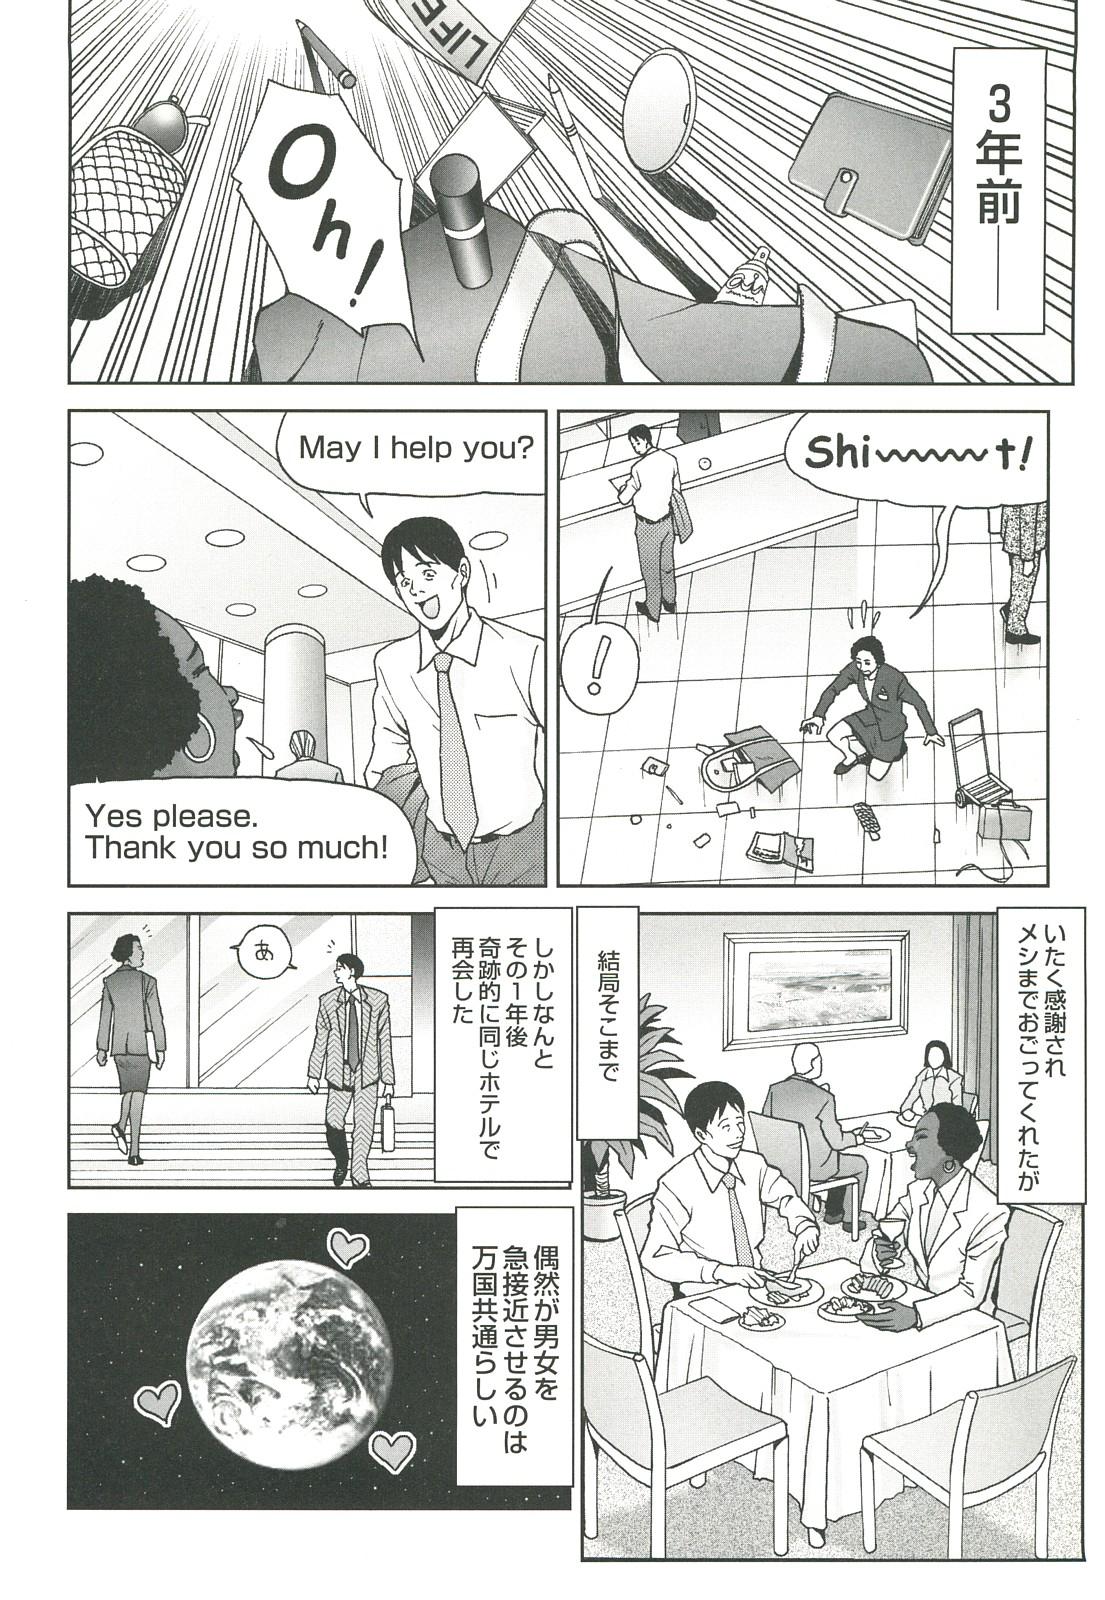 コミック裏モノJAPAN Vol.18 今井のりたつスペシャル号 265